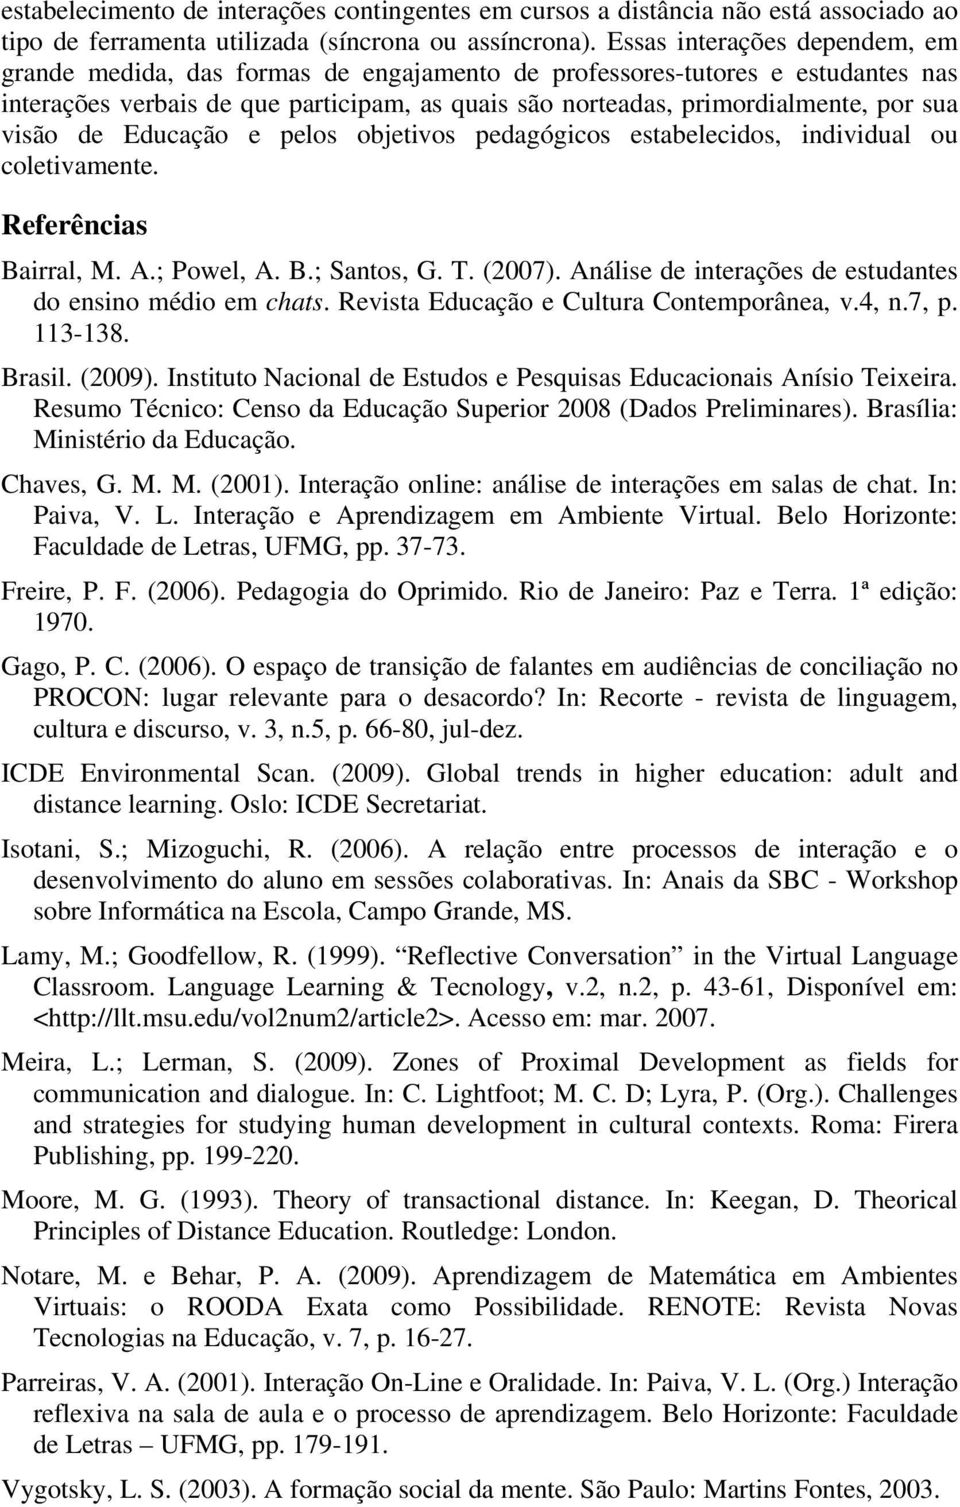 visão de Educação e pelos objetivos pedagógicos estabelecidos, individual ou coletivamente. Referências Bairral, M. A.; Powel, A. B.; Santos, G. T. (2007).